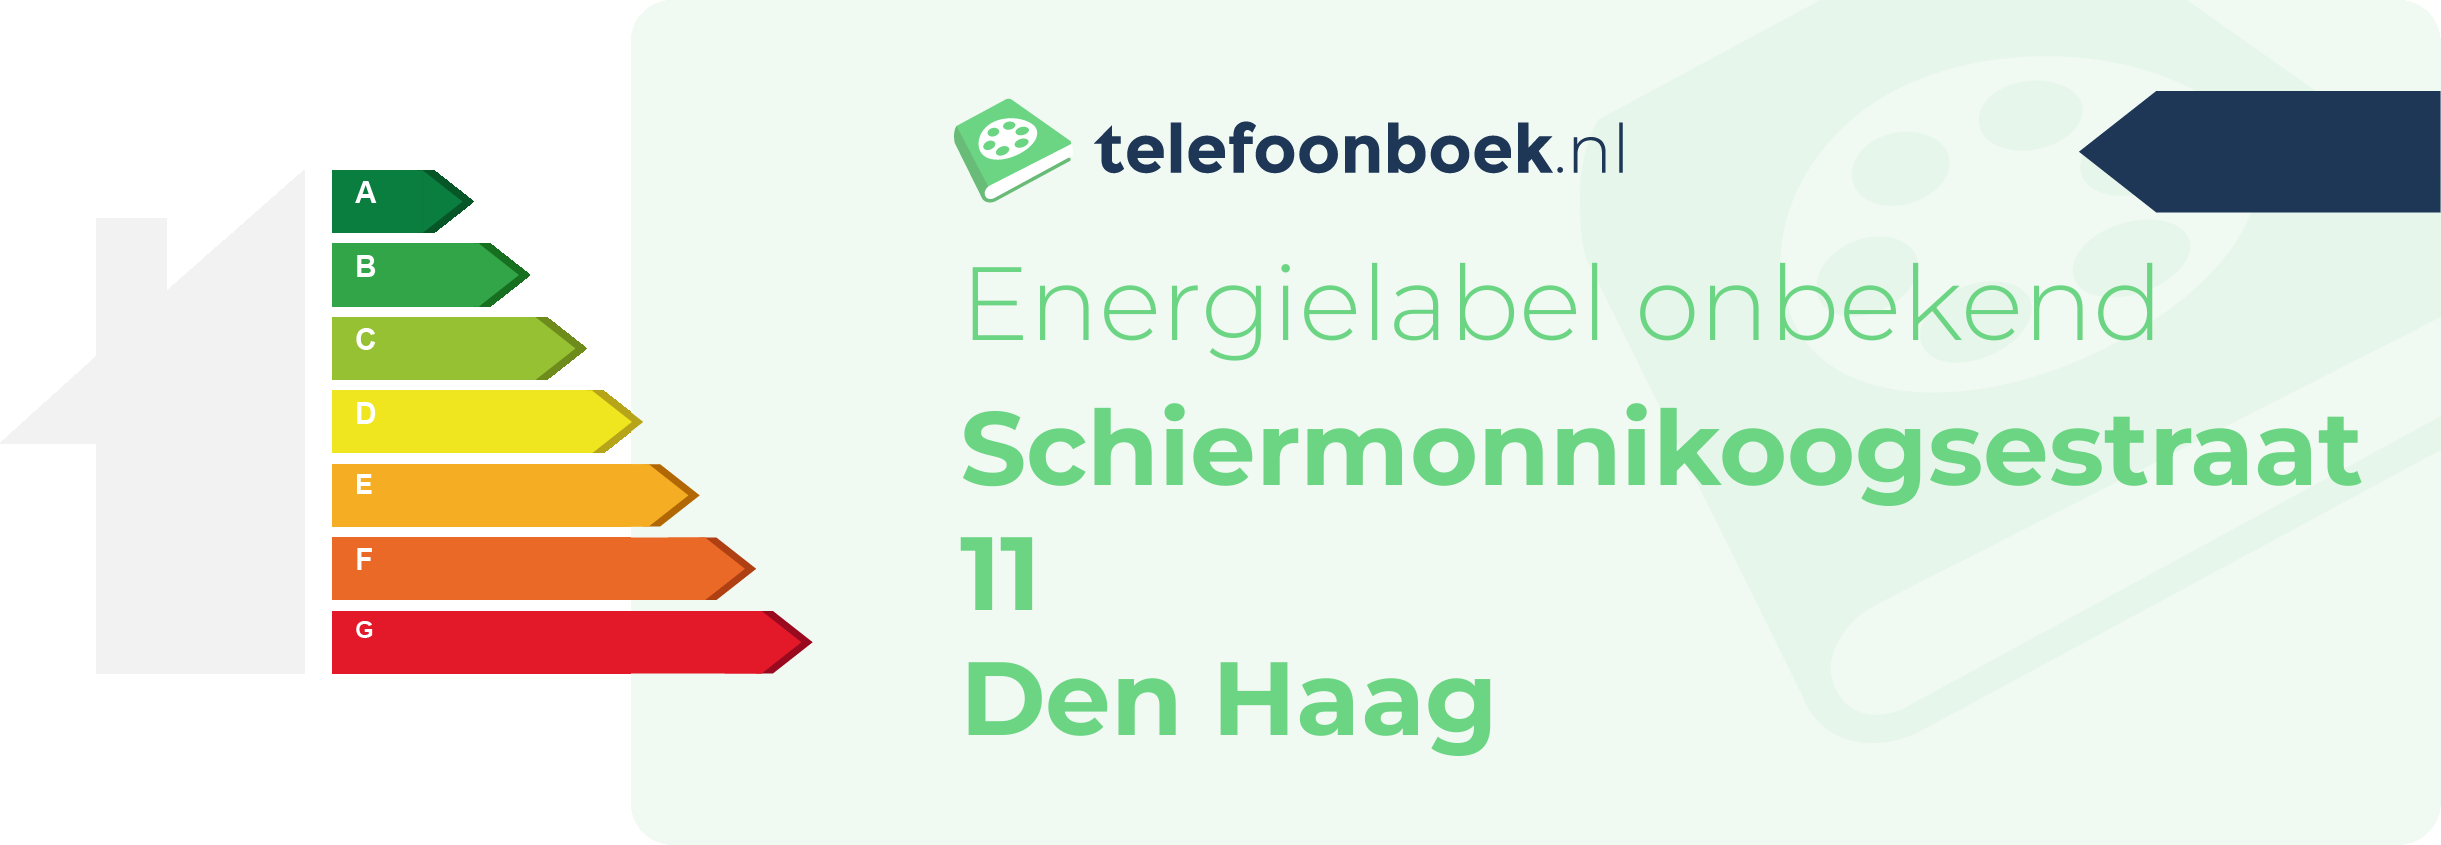 Energielabel Schiermonnikoogsestraat 11 Den Haag